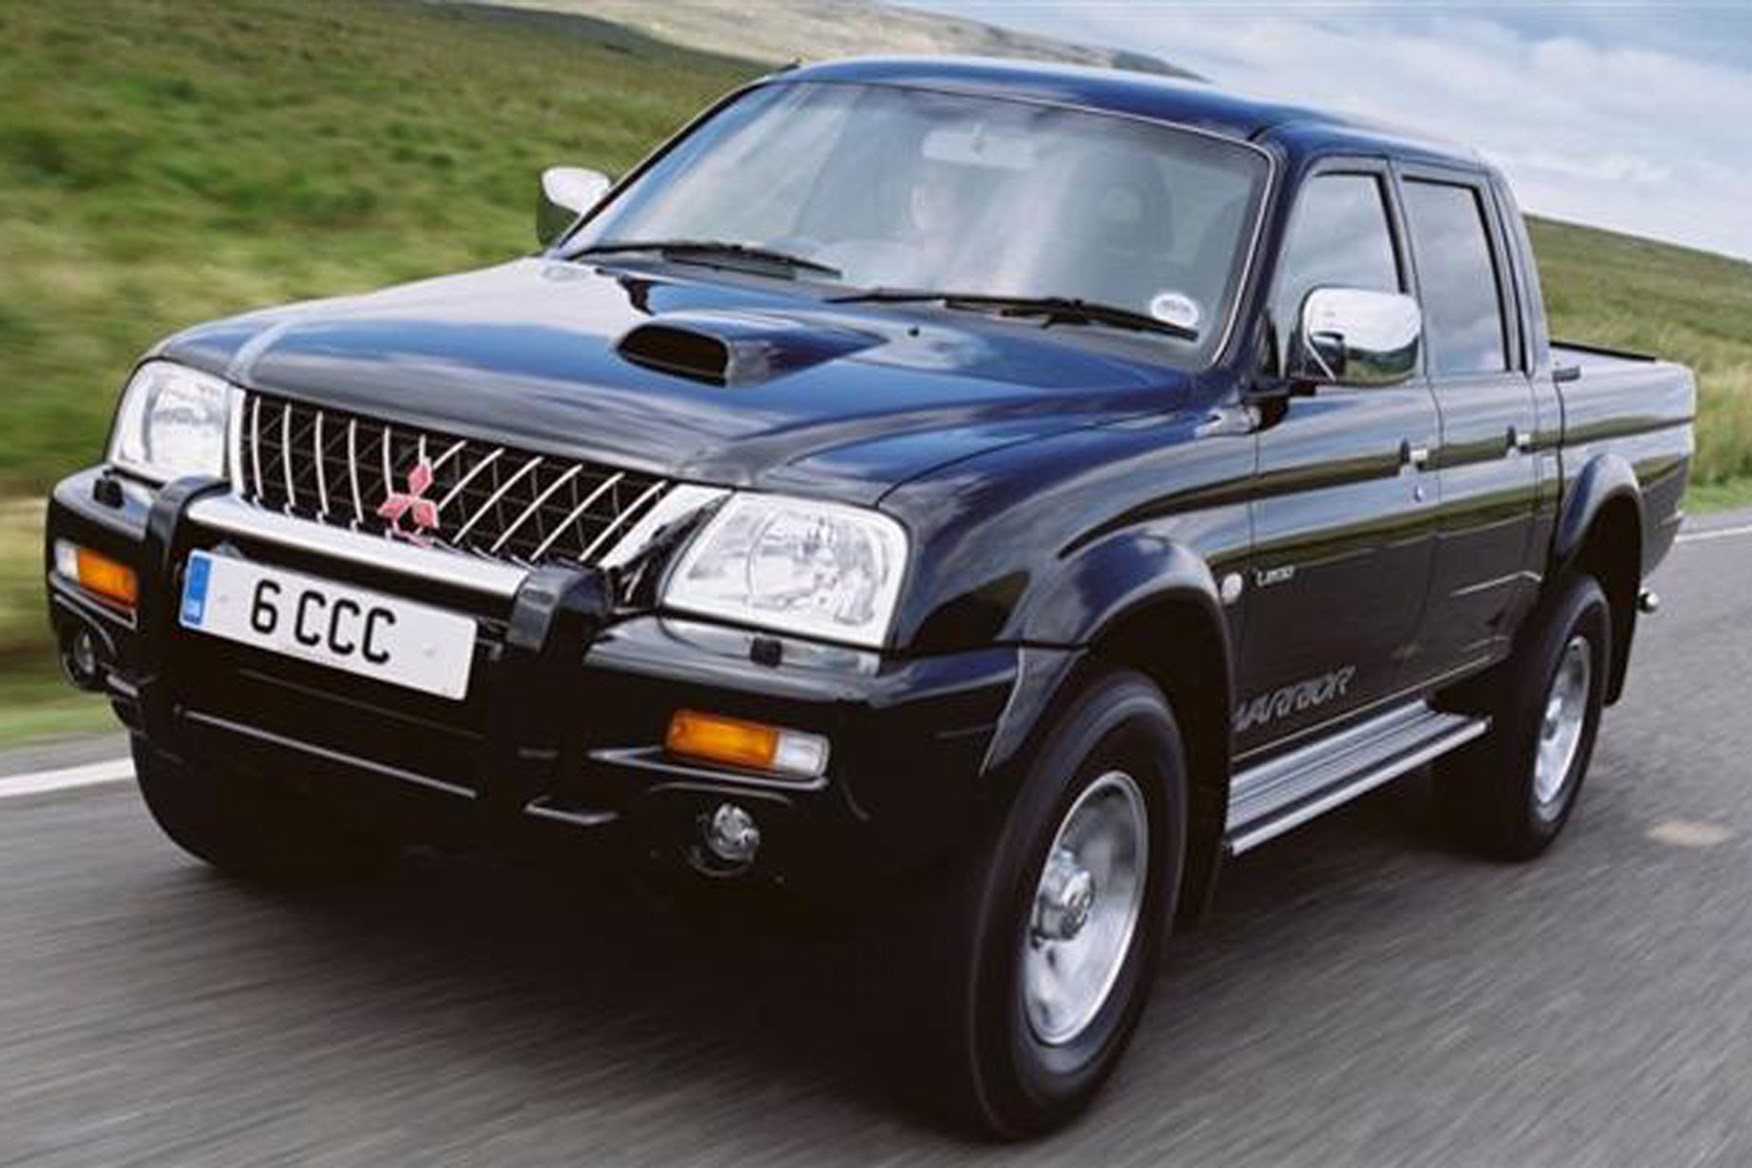 Mitsubishi L200 pickup review (1988-2006)